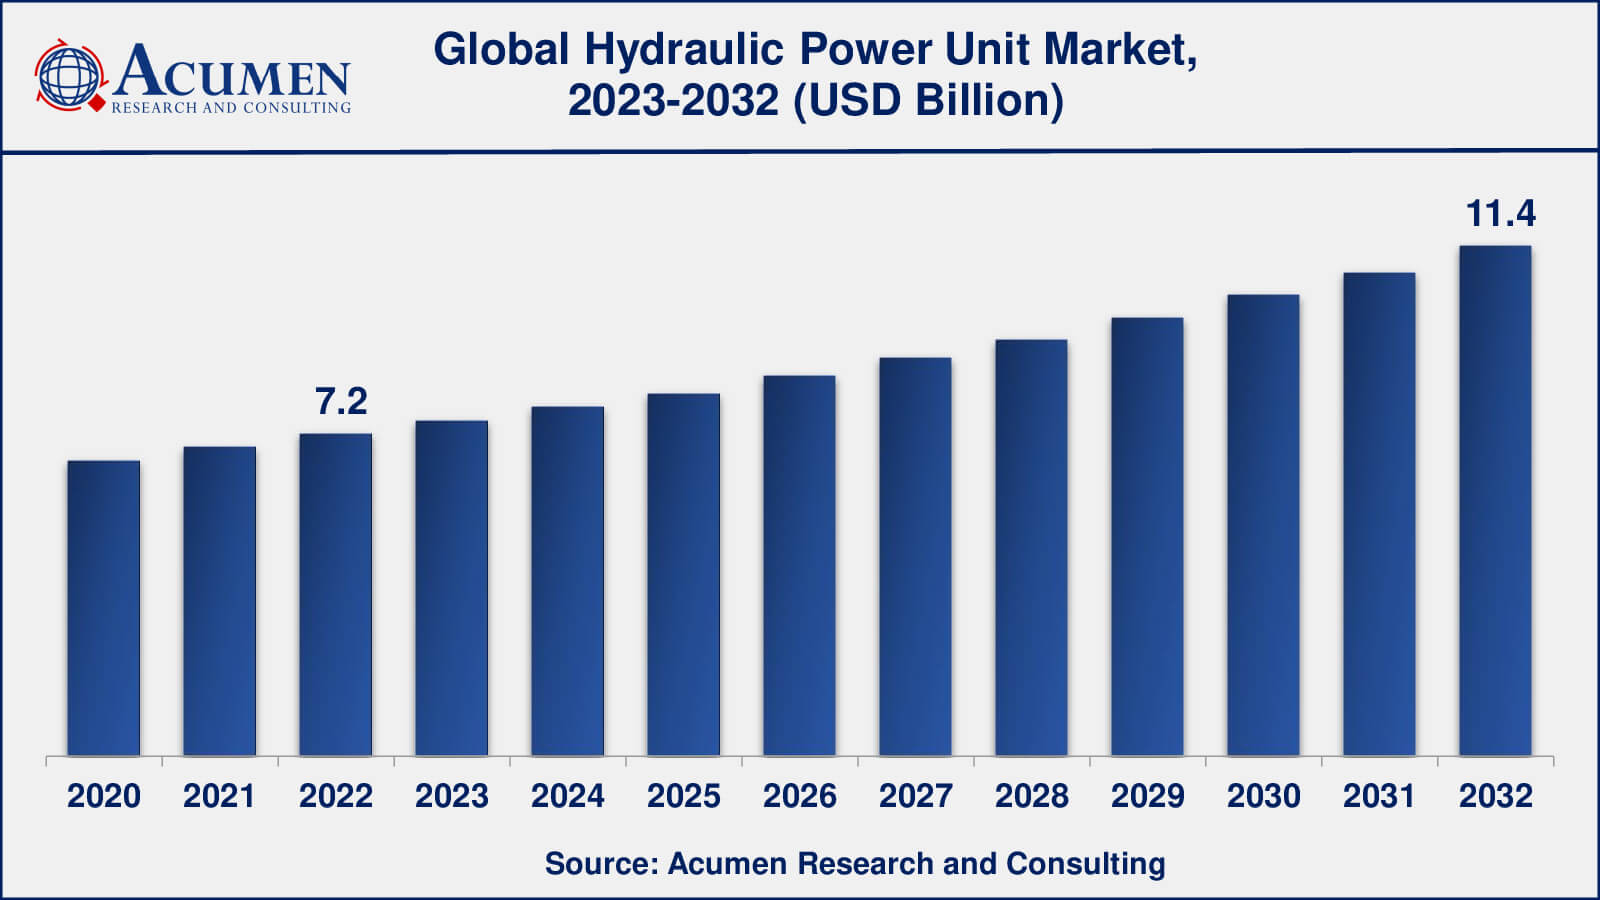 Global Hydraulic Power Unit Market Dynamics